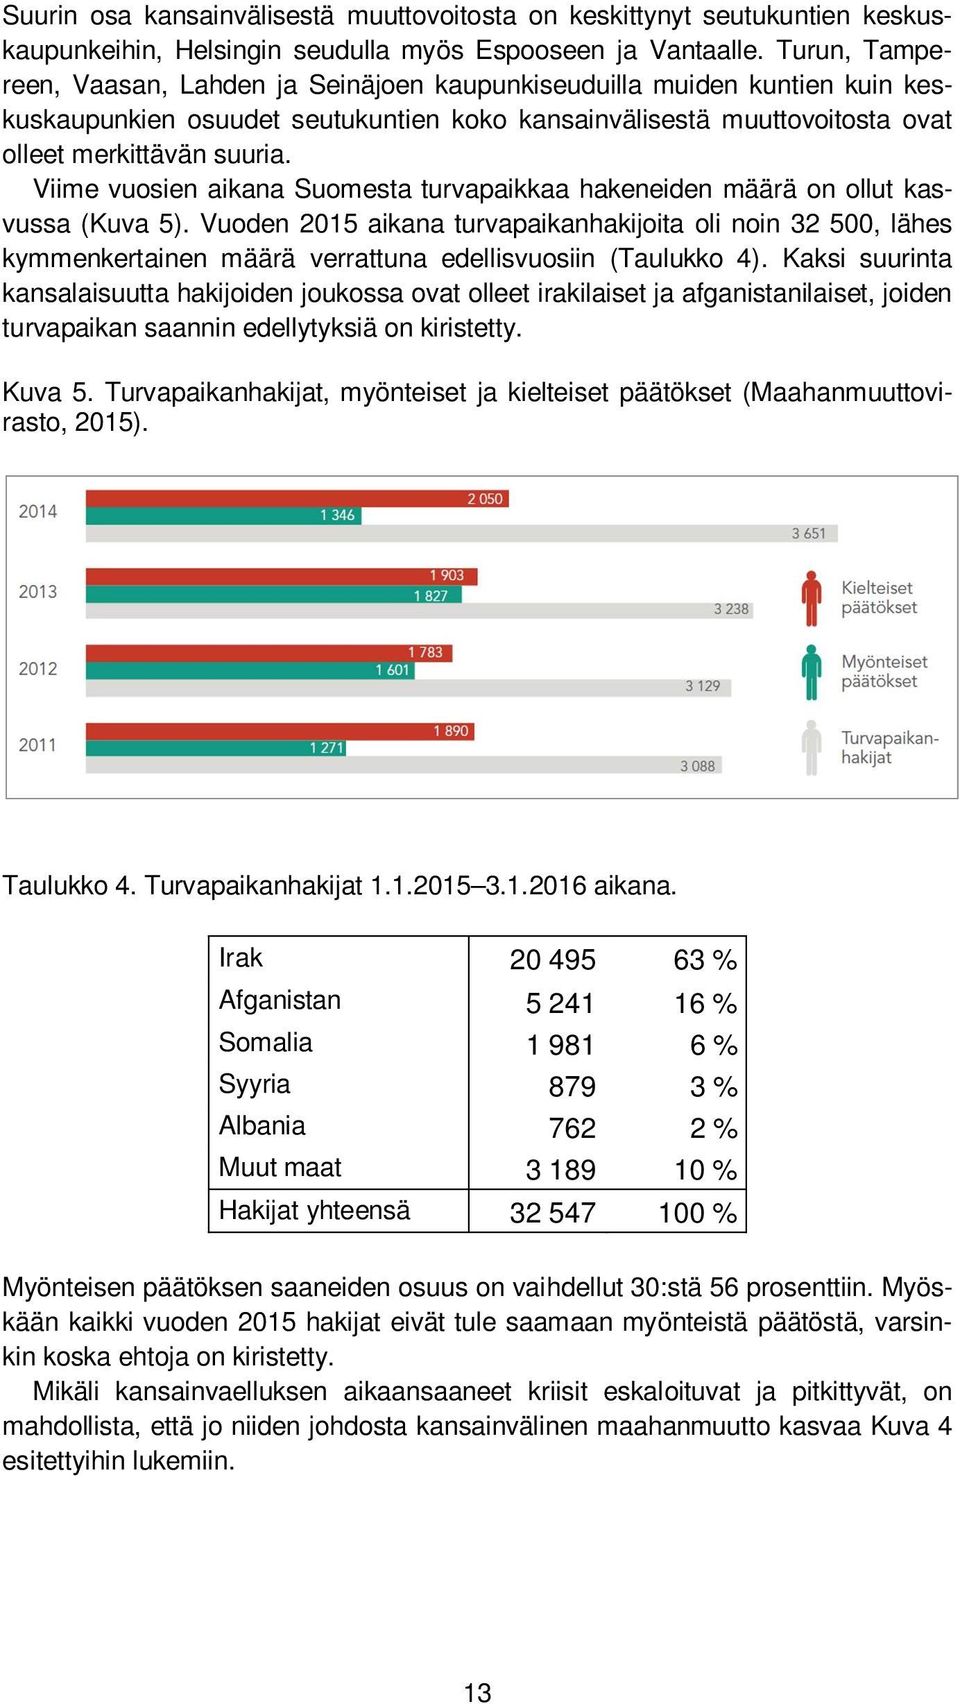 Viime vuosien aikana Suomesta turvapaikkaa hakeneiden määrä on ollut kasvussa (Kuva 5).